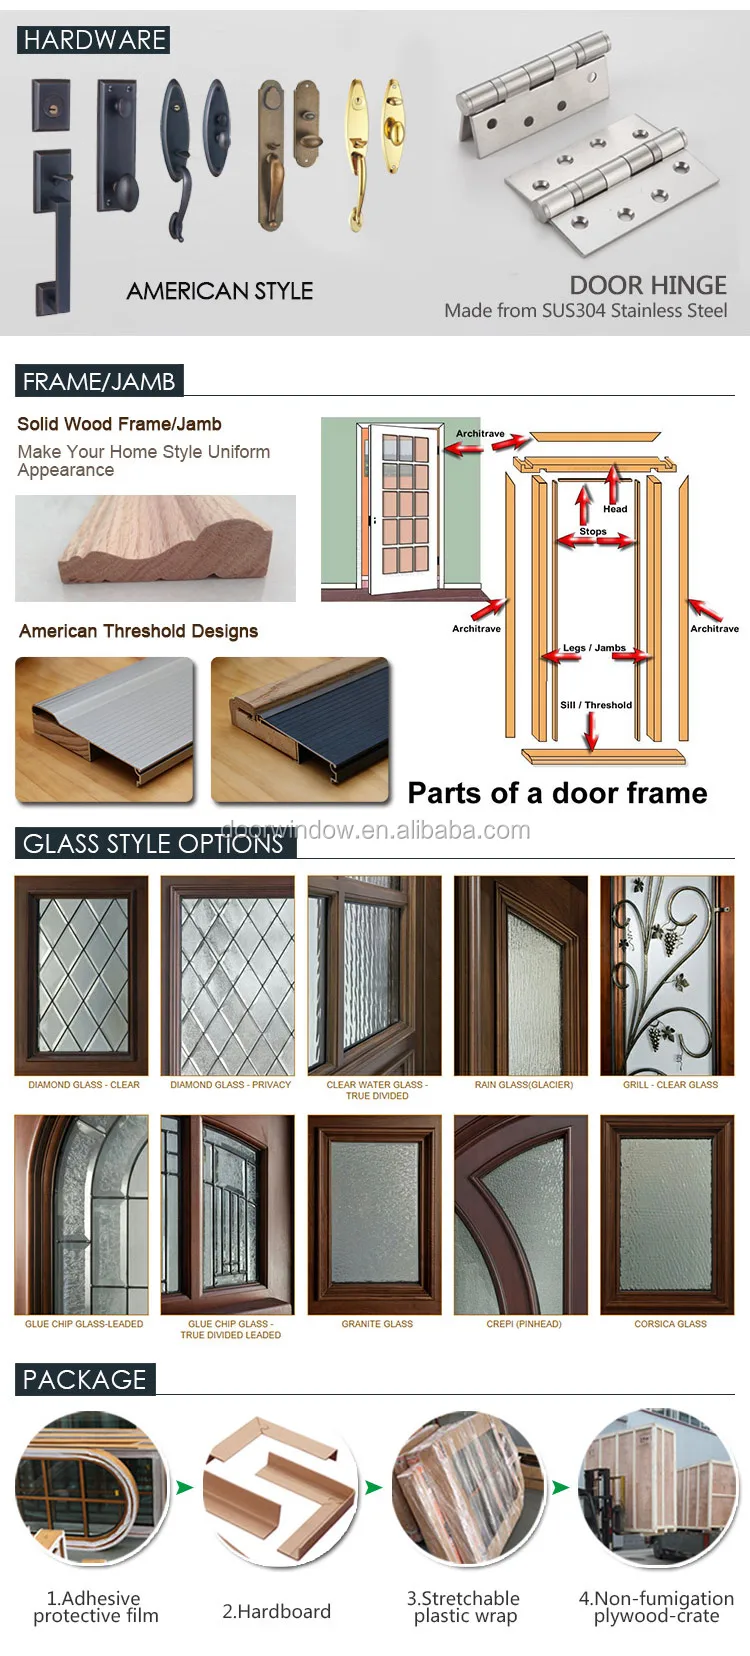 Install easily exterior door decorative top exterior glass door panels with solid wood